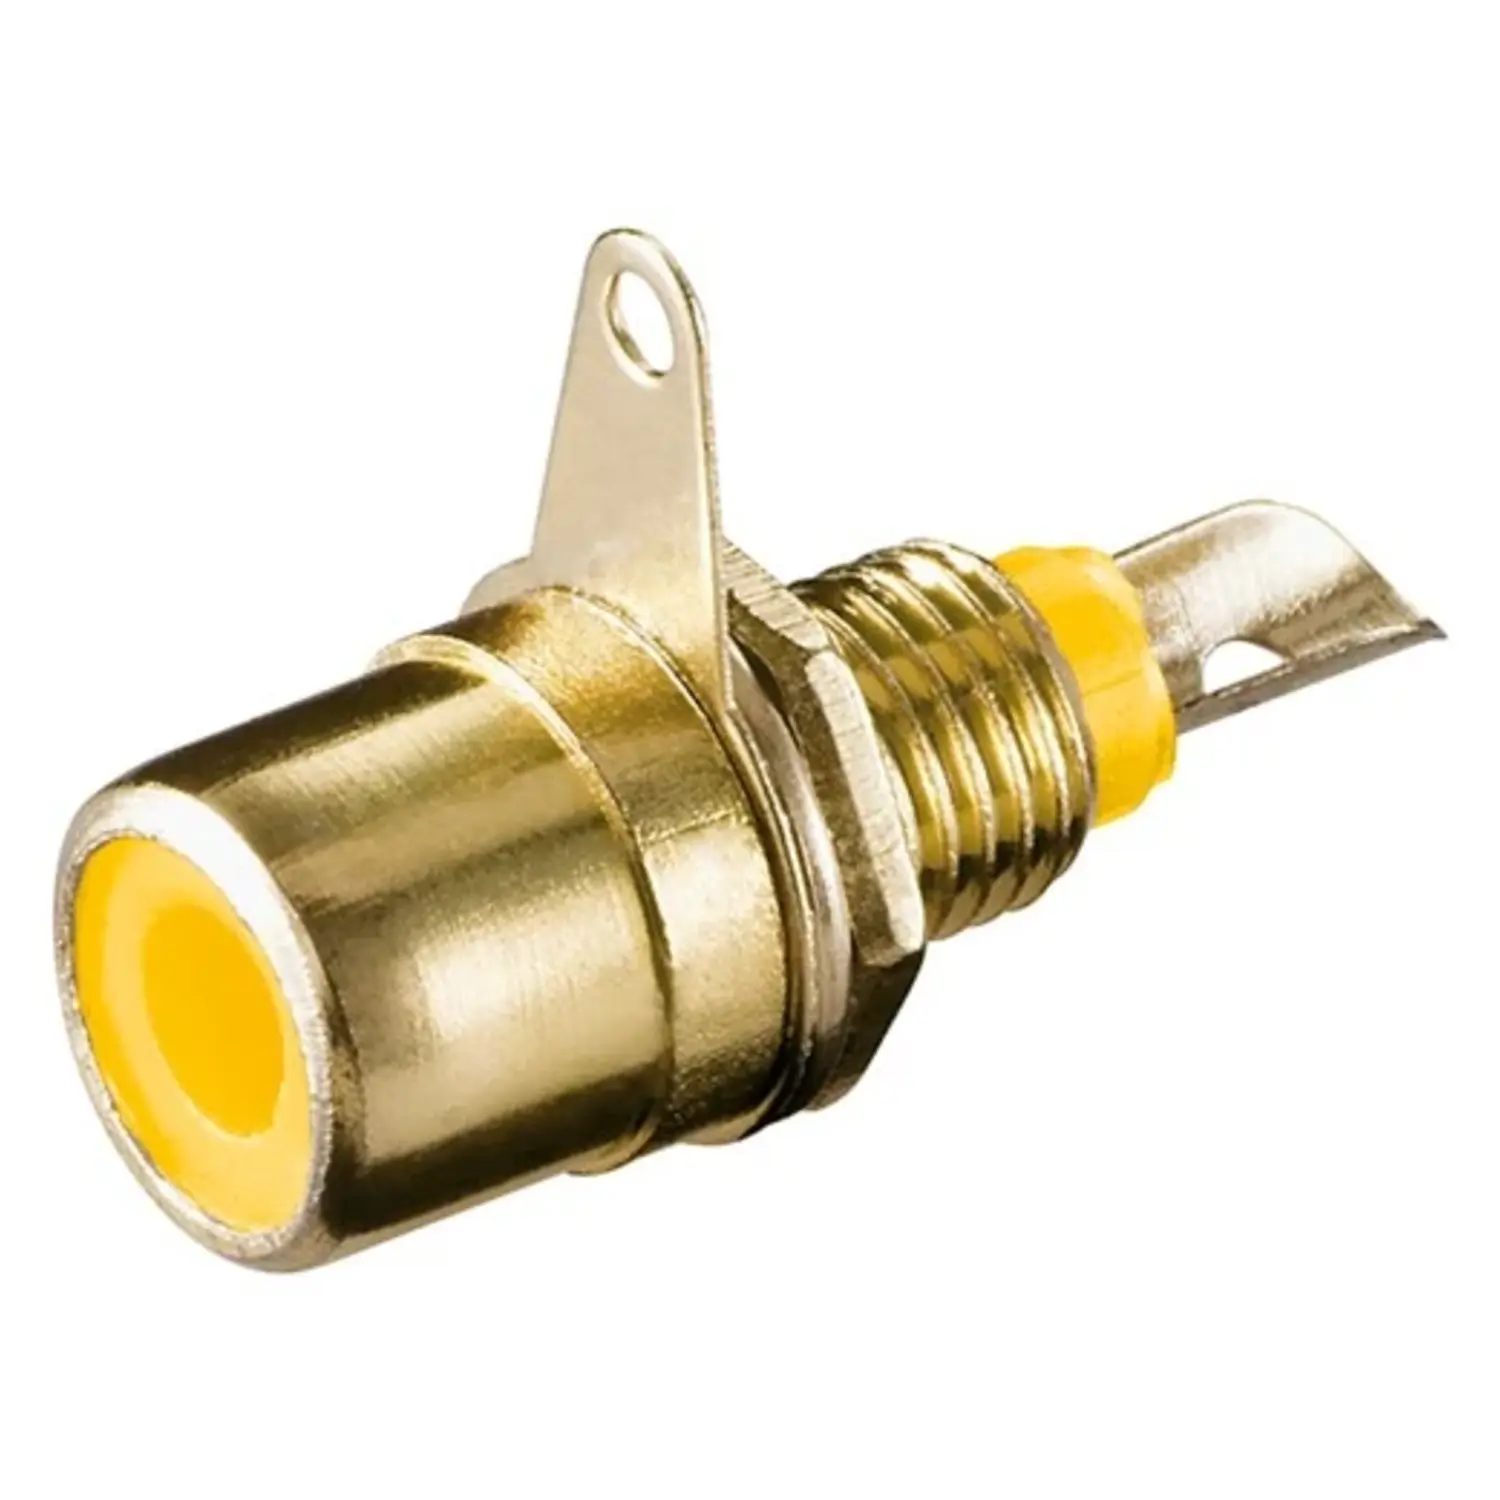 immagine del prodotto connettore presa rca da pannello placcata in oro di metallo giallo